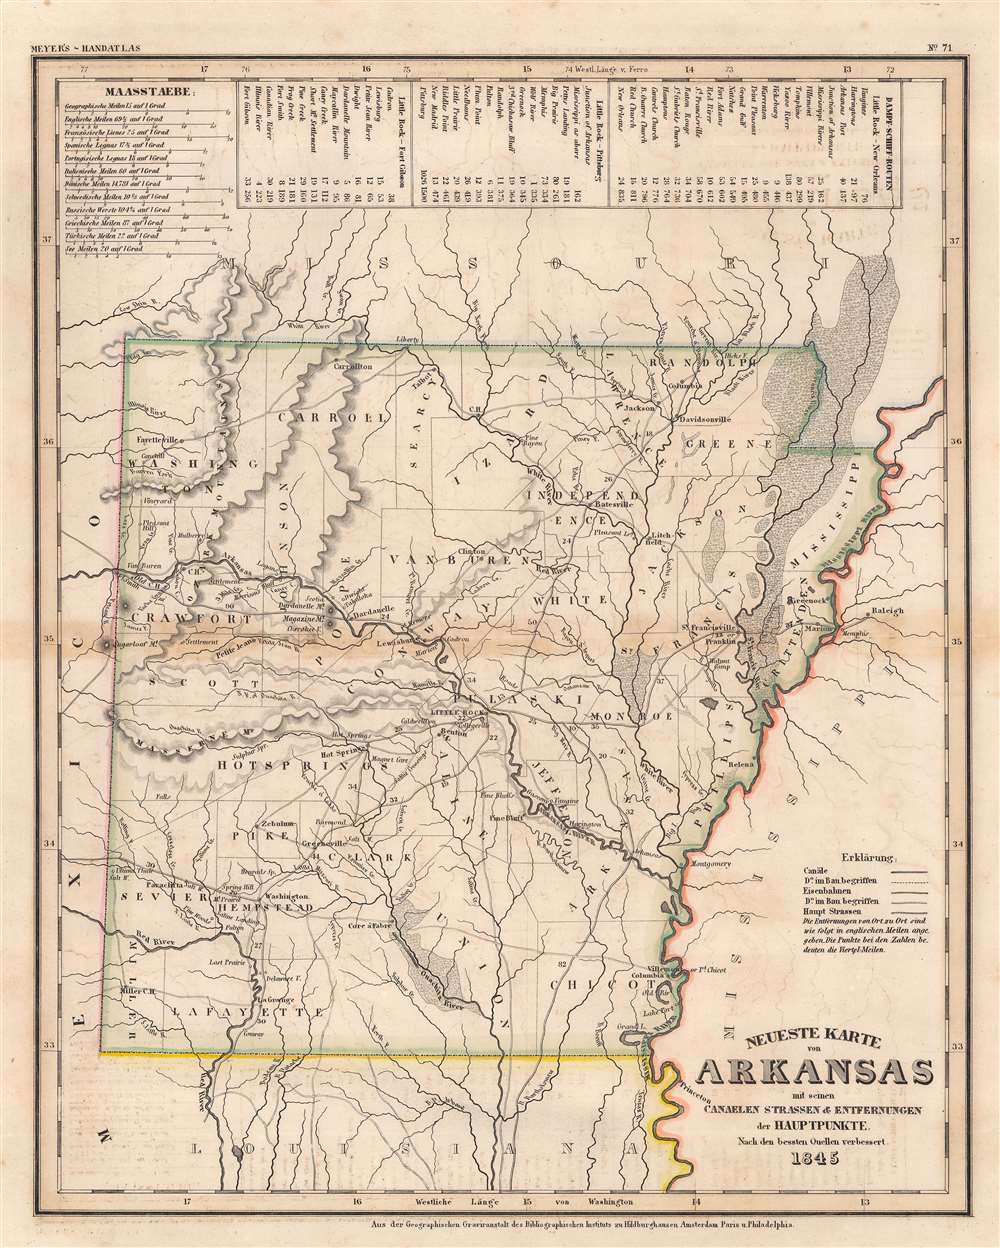 Neueste Karte von Arkansas mit seinen Canaelen Strassen und Entfernungen der Hauptpunkte. - Main View